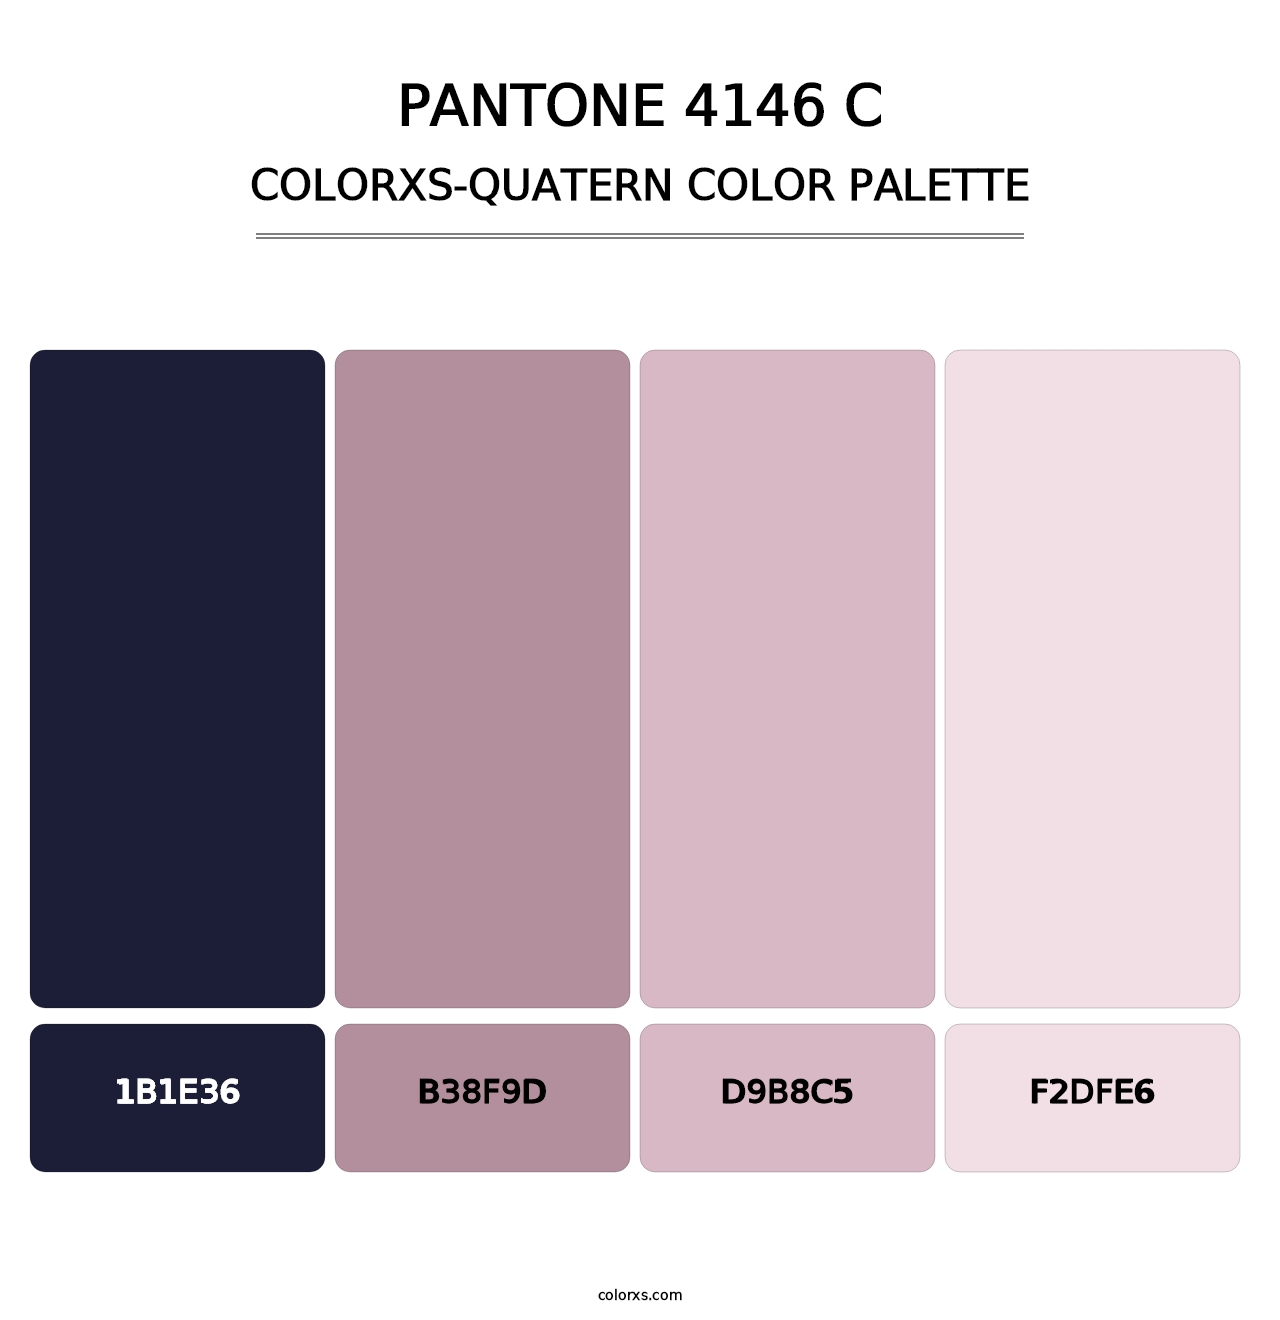 PANTONE 4146 C - Colorxs Quatern Palette